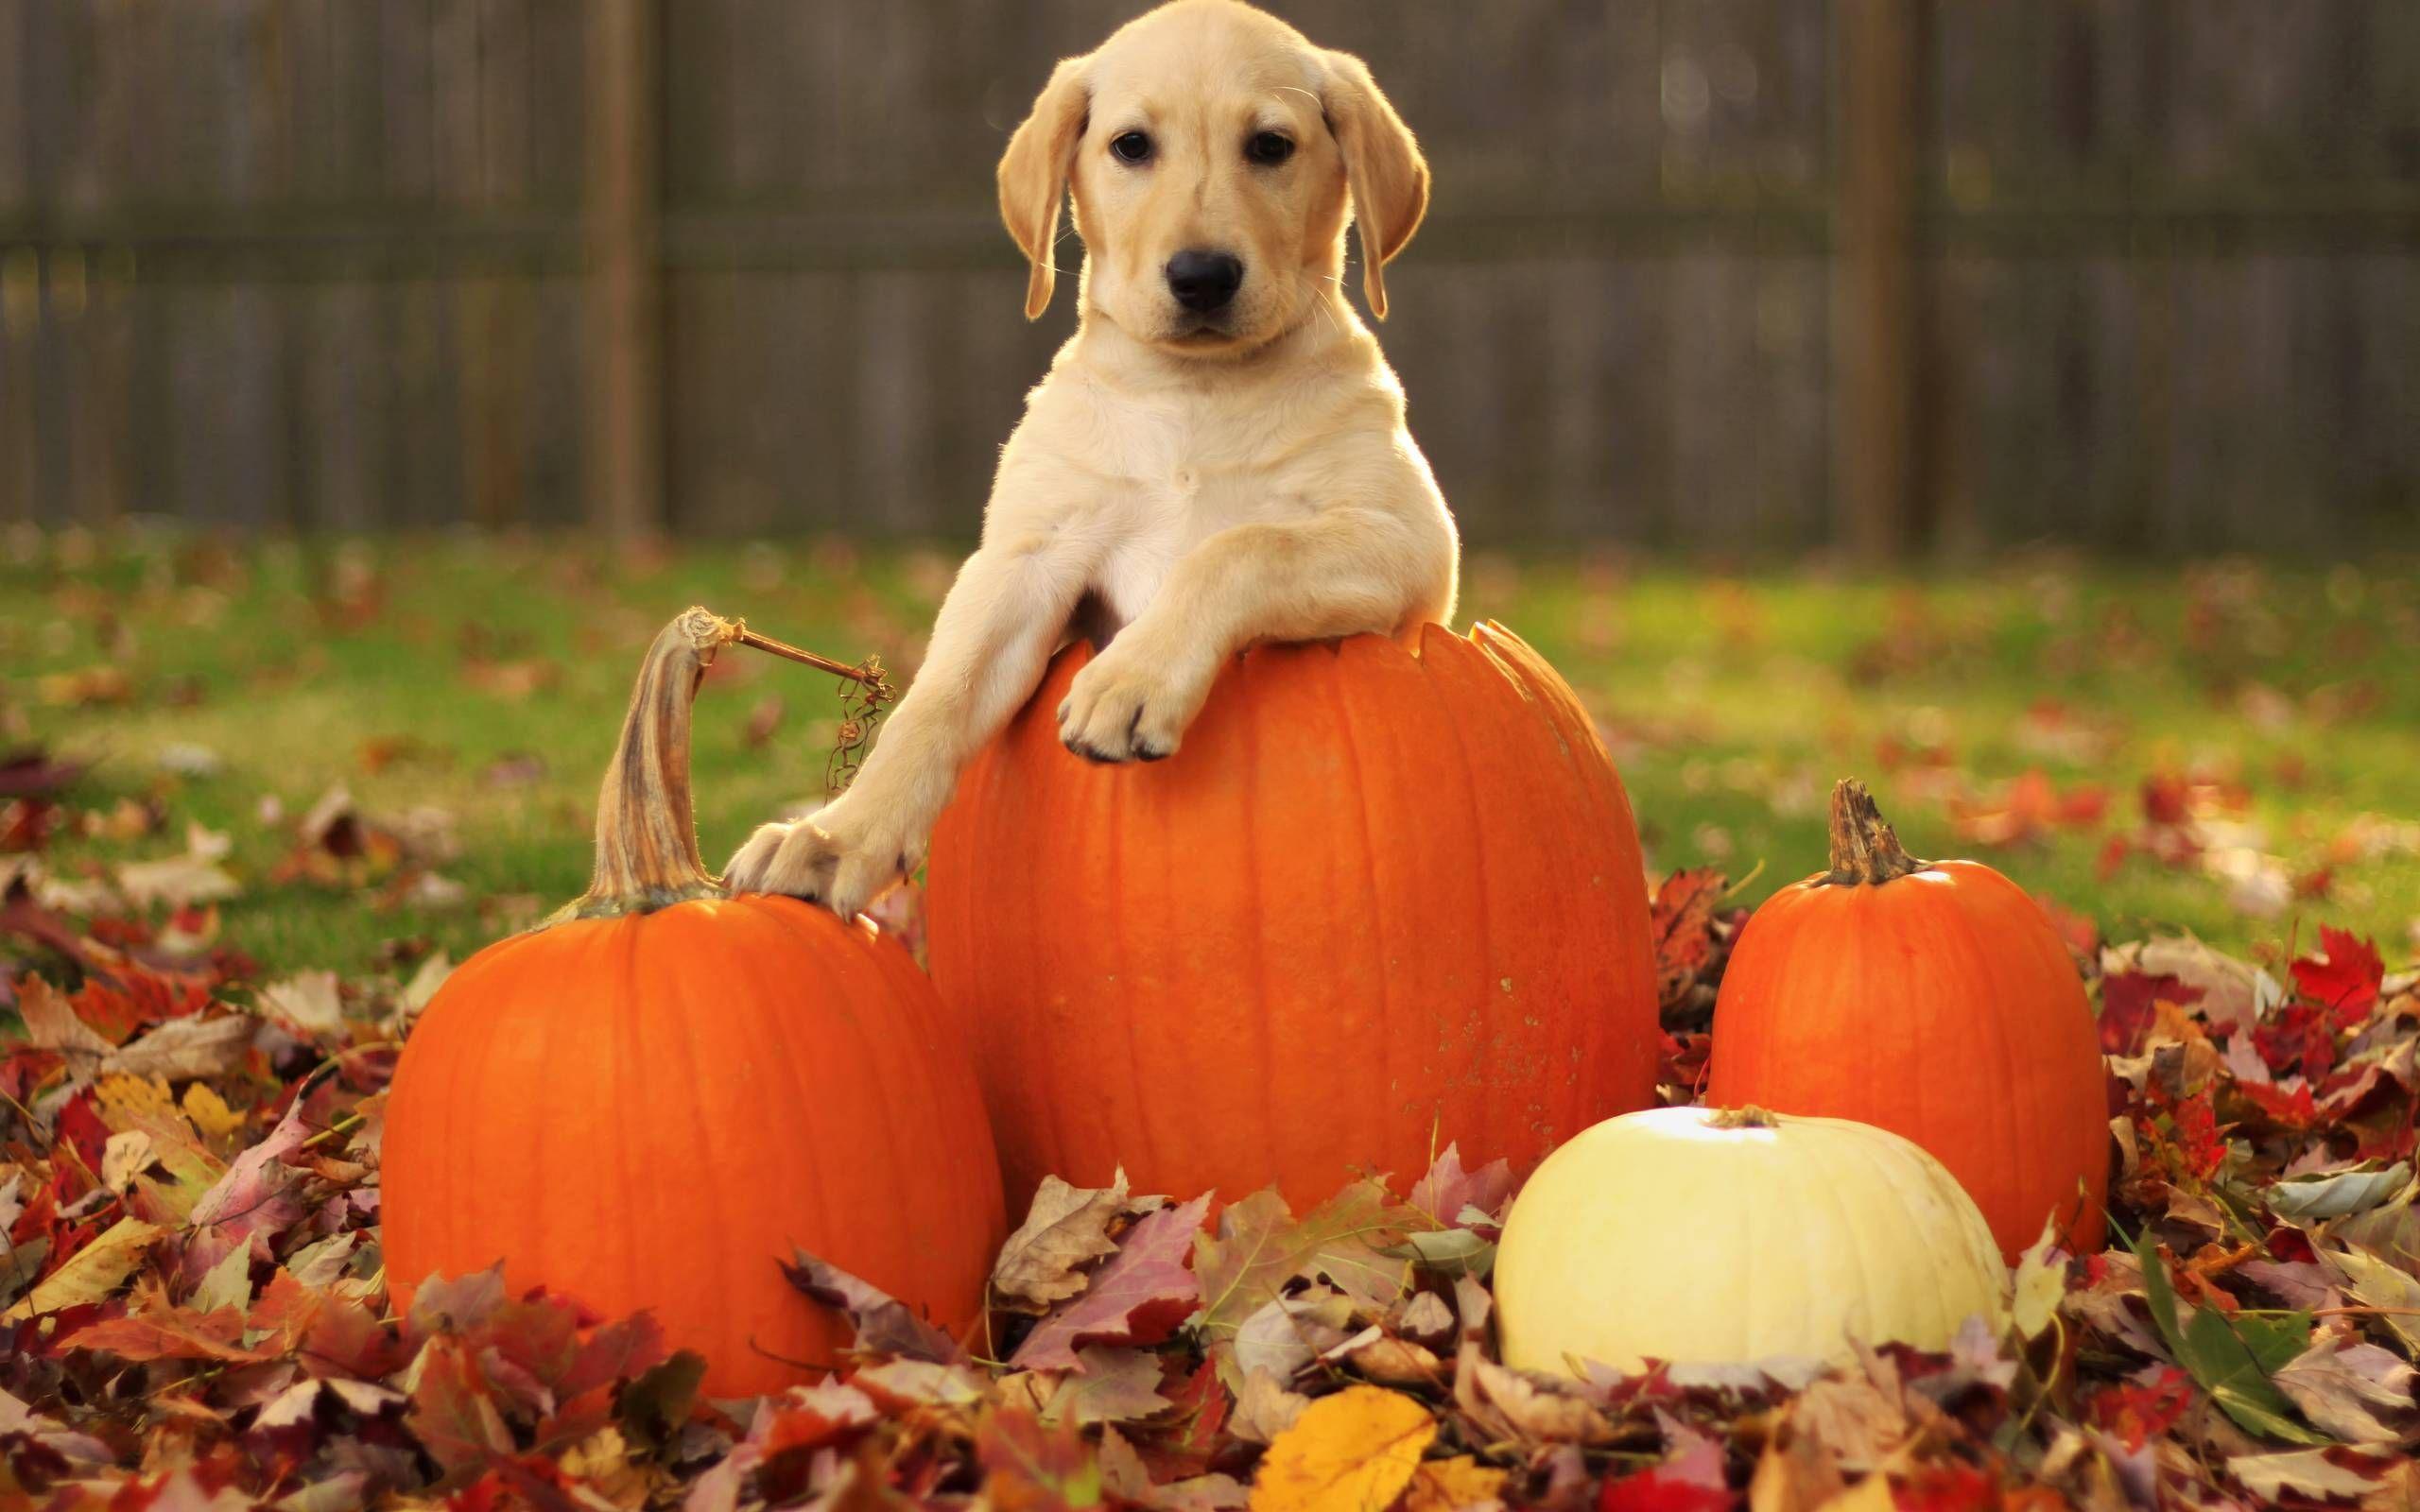 Free Desktop Pumpkin Wallpaper. Wallpaper, Background, Image. Dog pumpkin, Dog photohoot, Fall dog